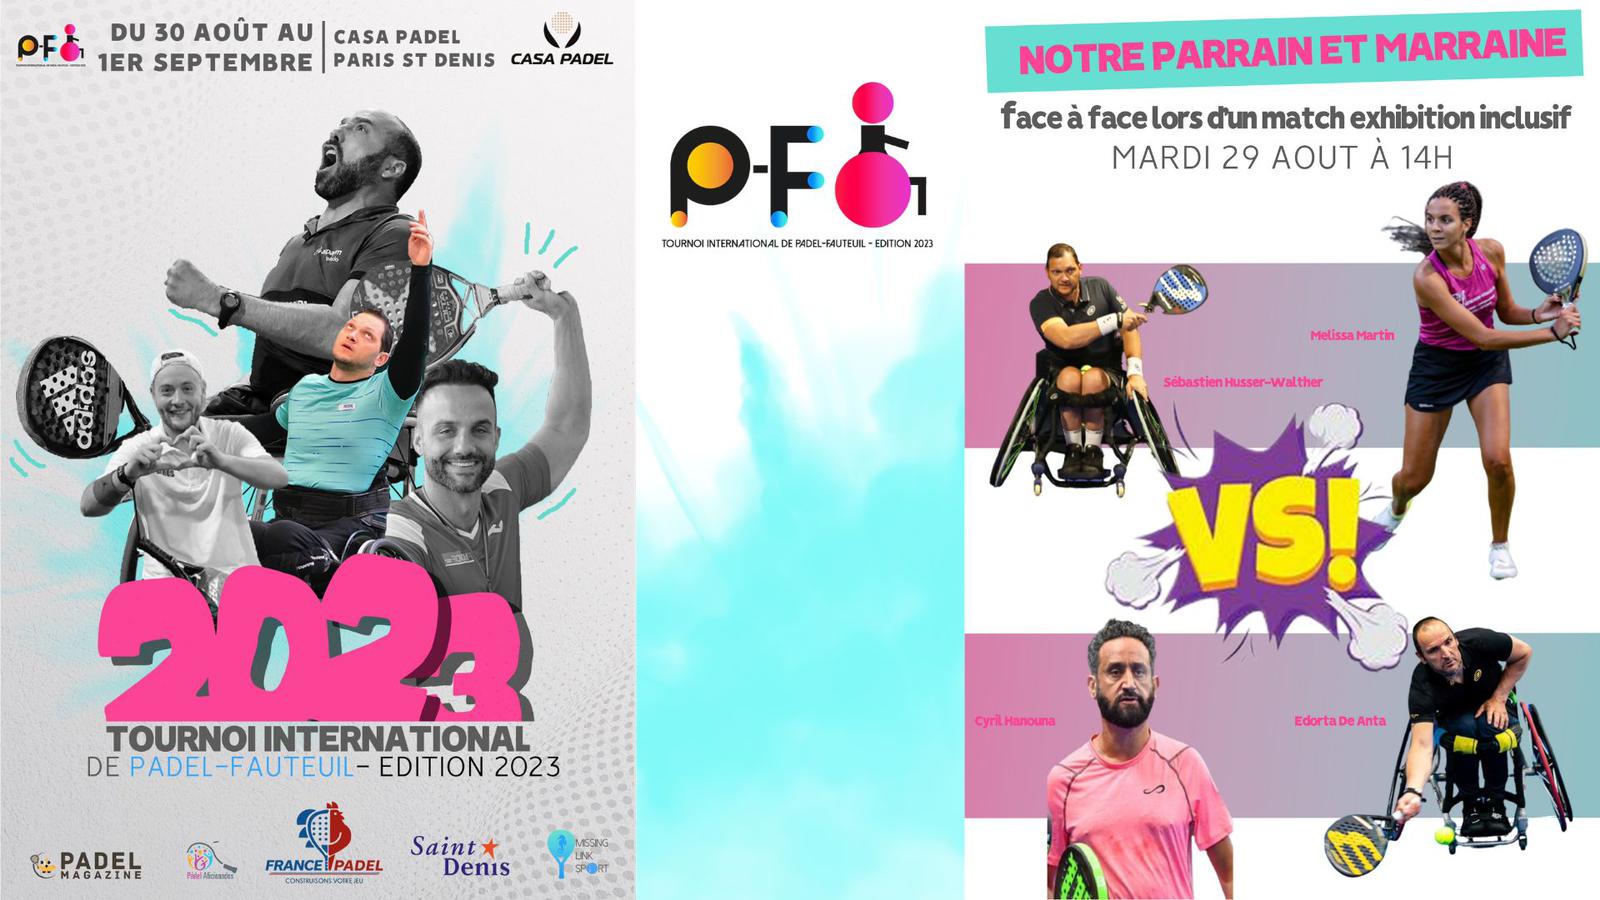 La padel-fauteuil à l’honneur avec le 2ᵉ tournoi international en France du 29 août au 1ᵉʳ septembre